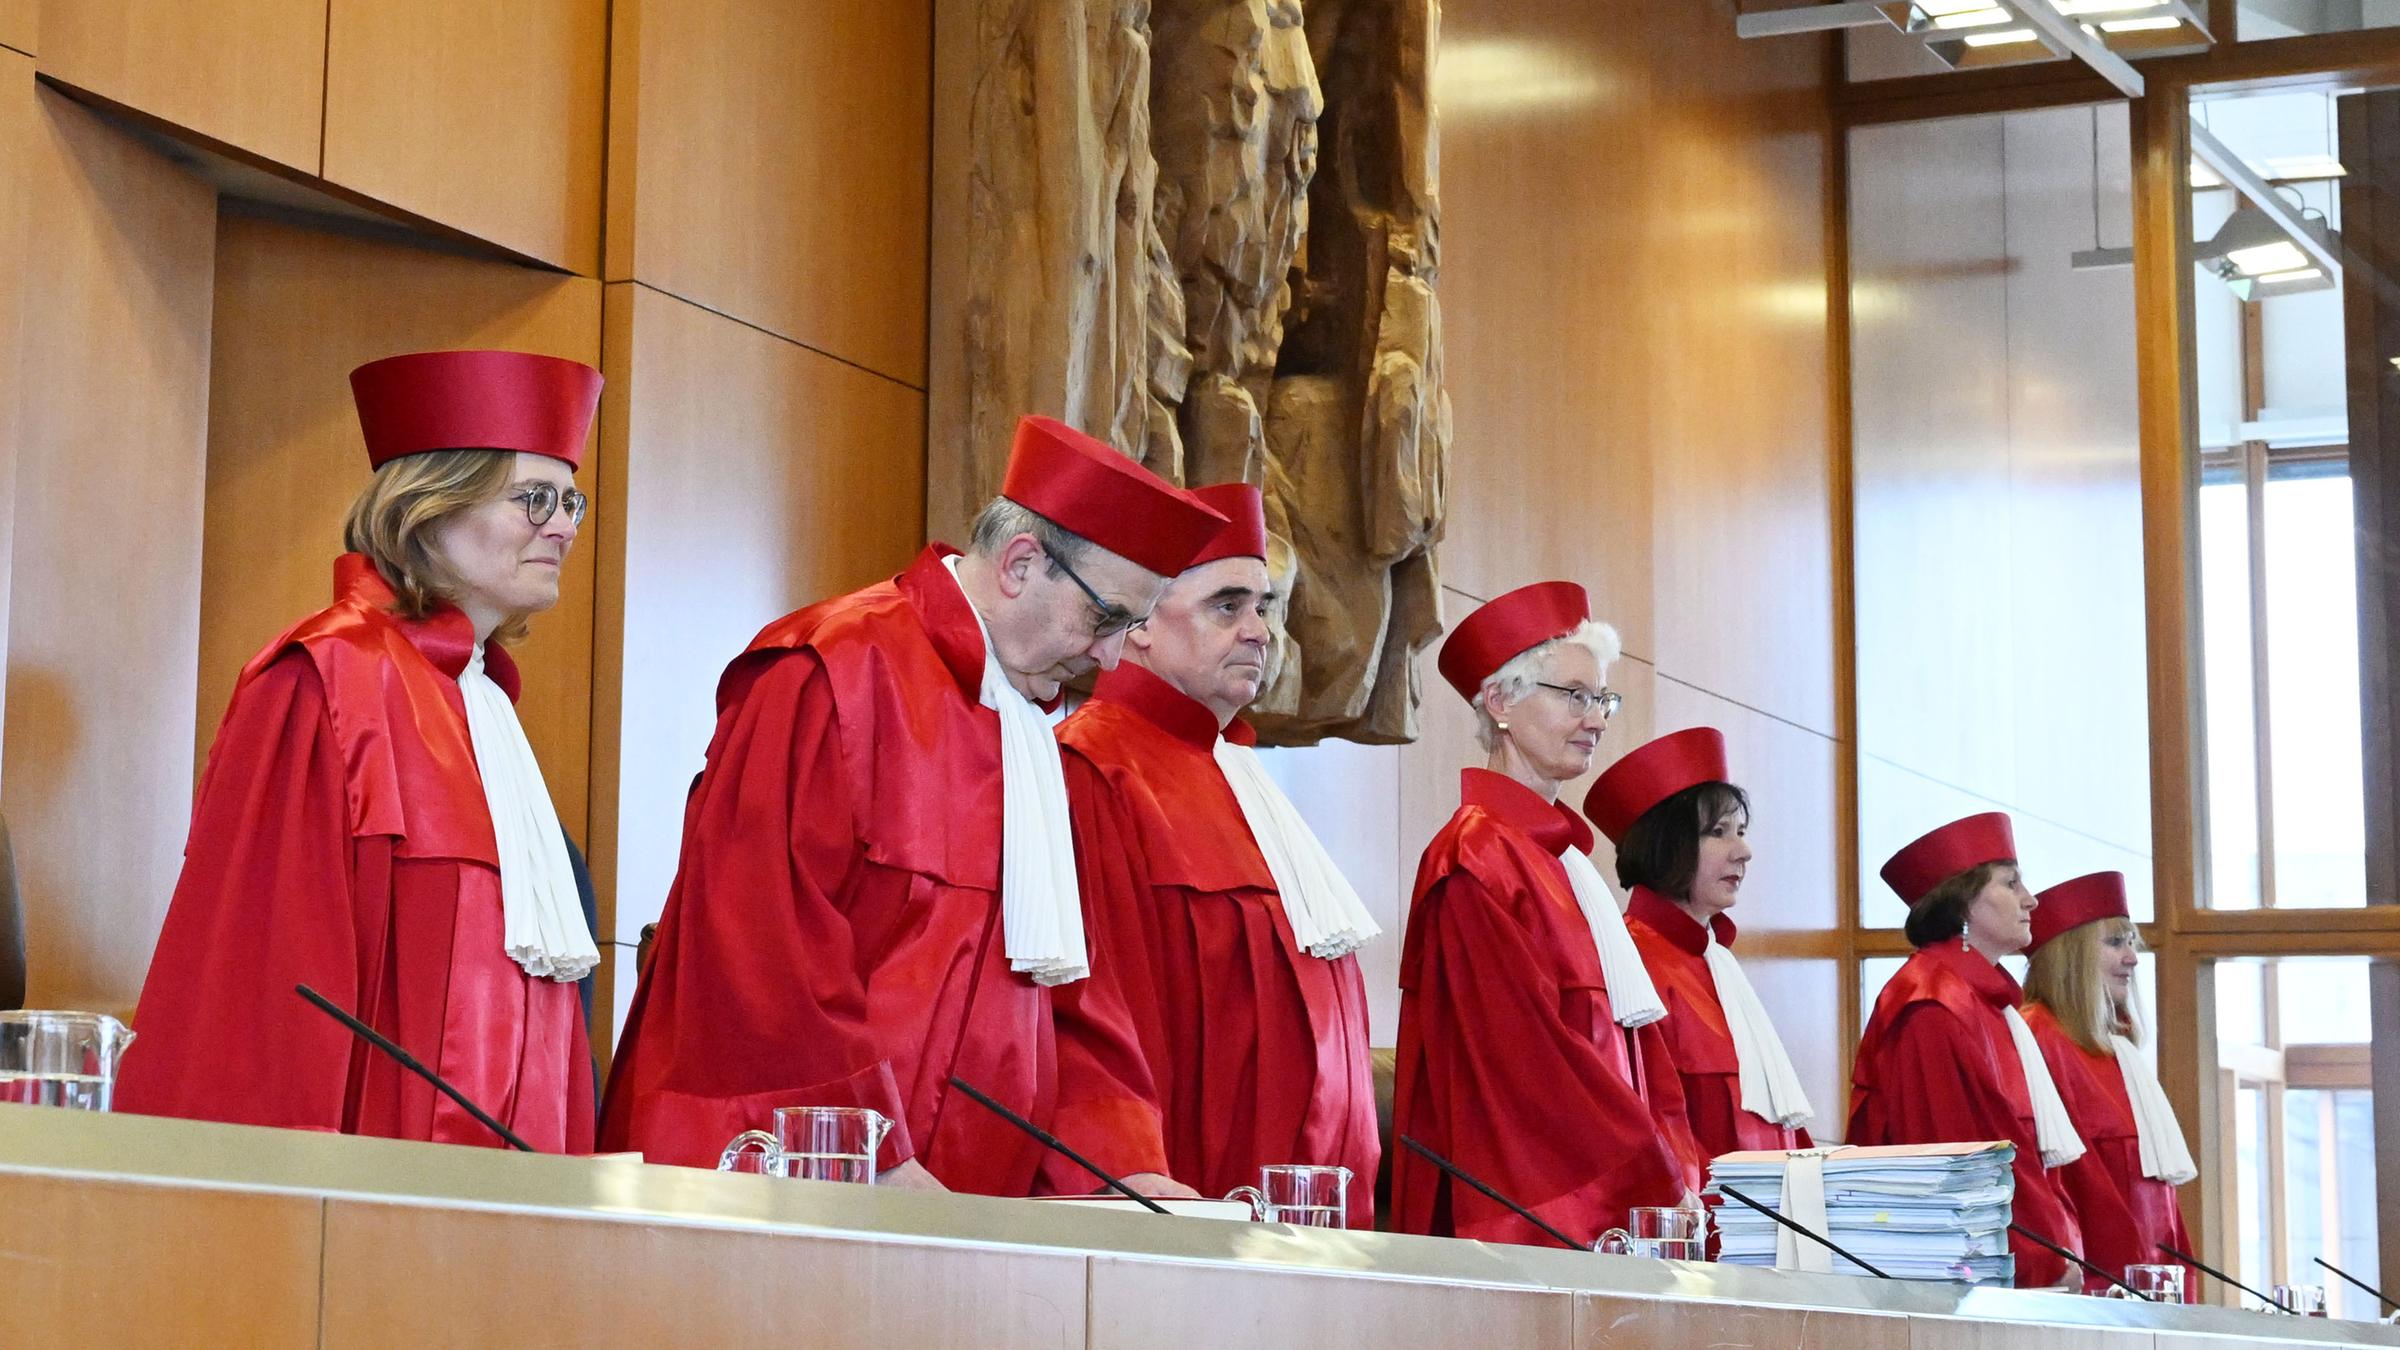 Mehrere Richter stehend in roter Robe. Hinter ihnen eine Wand mit einer steinernen Skulptur.